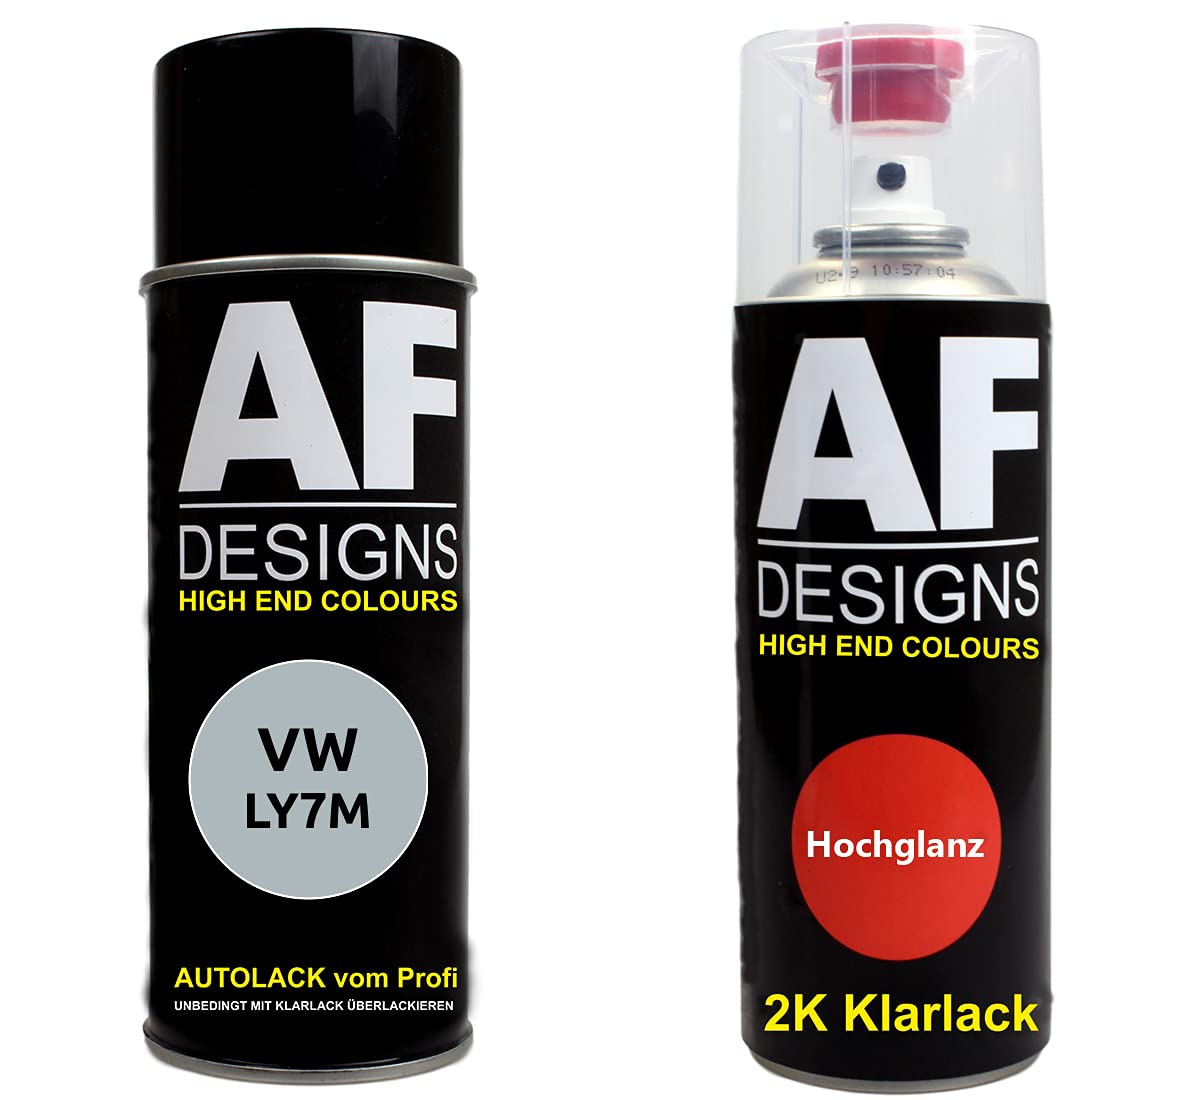 Autolack Spraydose Set für VW LY7M Alusilver Metallic 2K Klarlack Basislack Sprühdose Spraydosen 2x400ml von Alex Flittner Designs